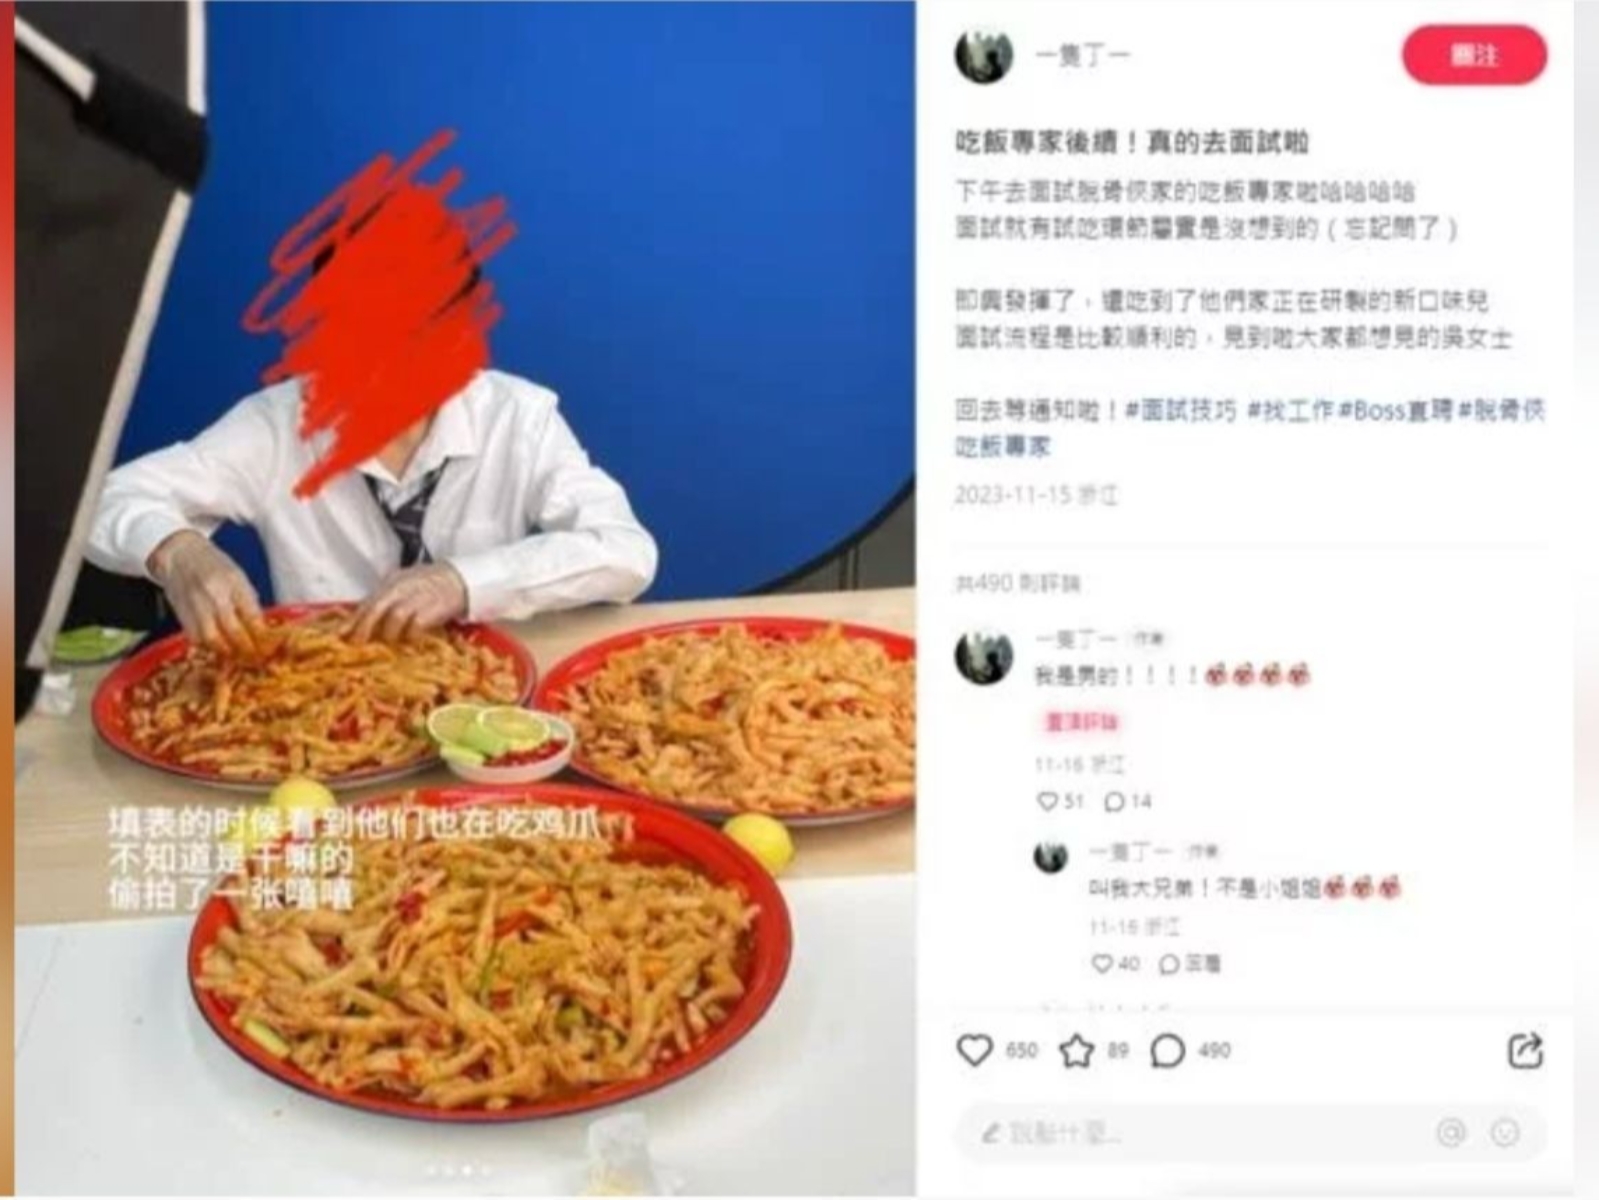 中國食品公司開出月薪近 9 萬徵「吃飯專家」，工作內容僅需「吃雞爪」且需要嘴巴大、吃相好看等條件！